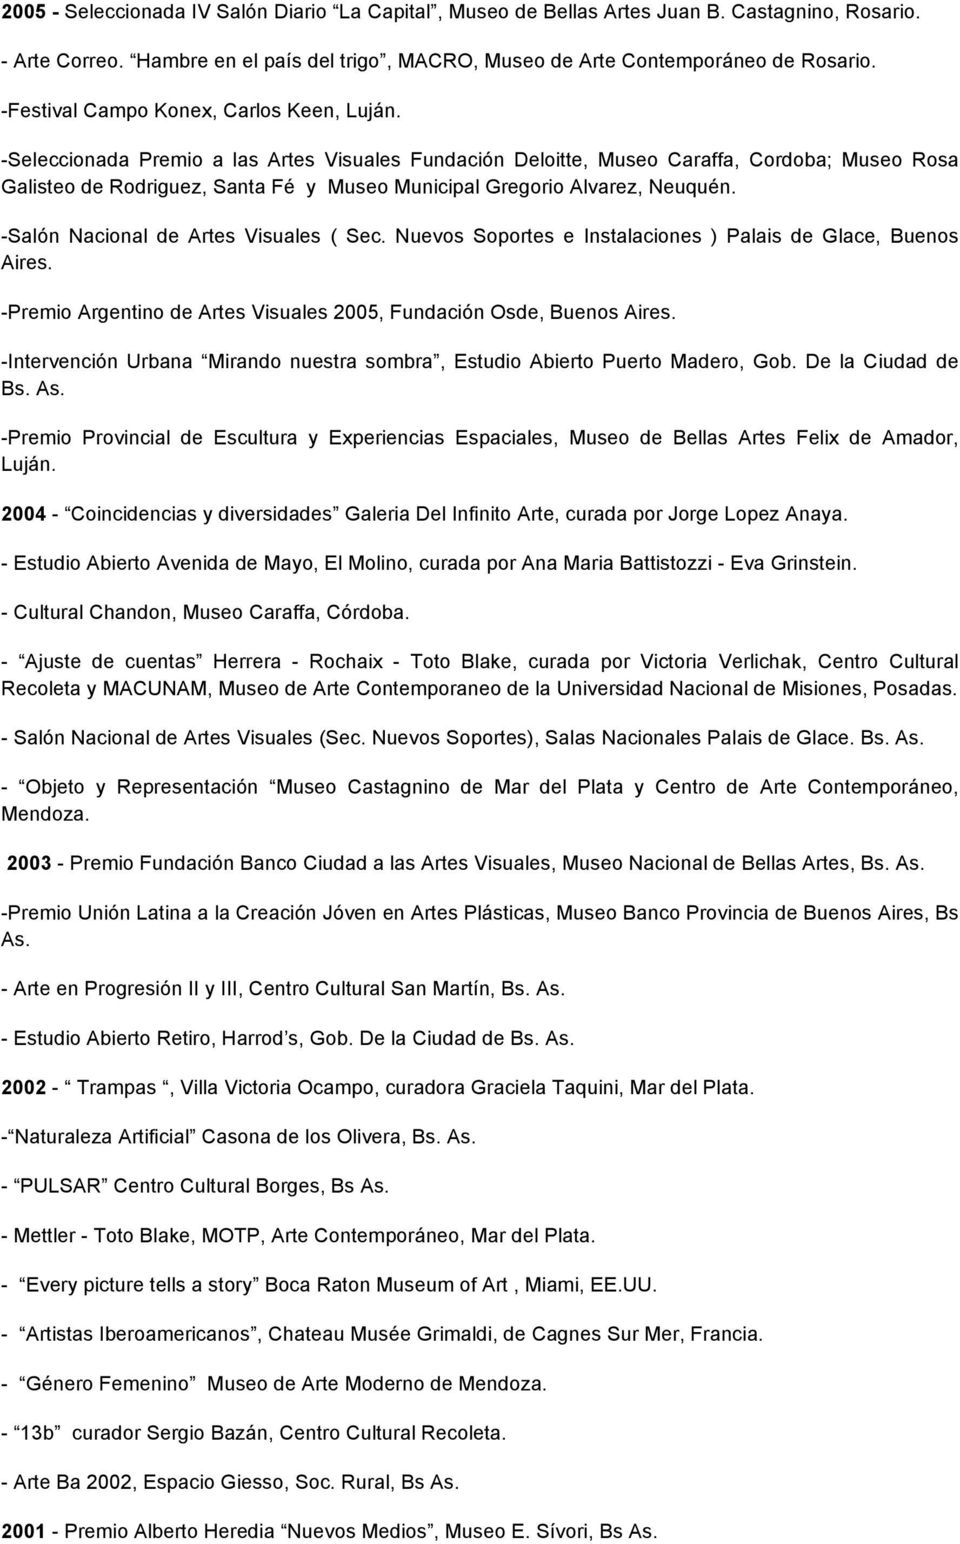 -Seleccionada Premio a las Artes Visuales Fundación Deloitte, Museo Caraffa, Cordoba; Museo Rosa Galisteo de Rodriguez, Santa Fé y Museo Municipal Gregorio Alvarez, Neuquén.